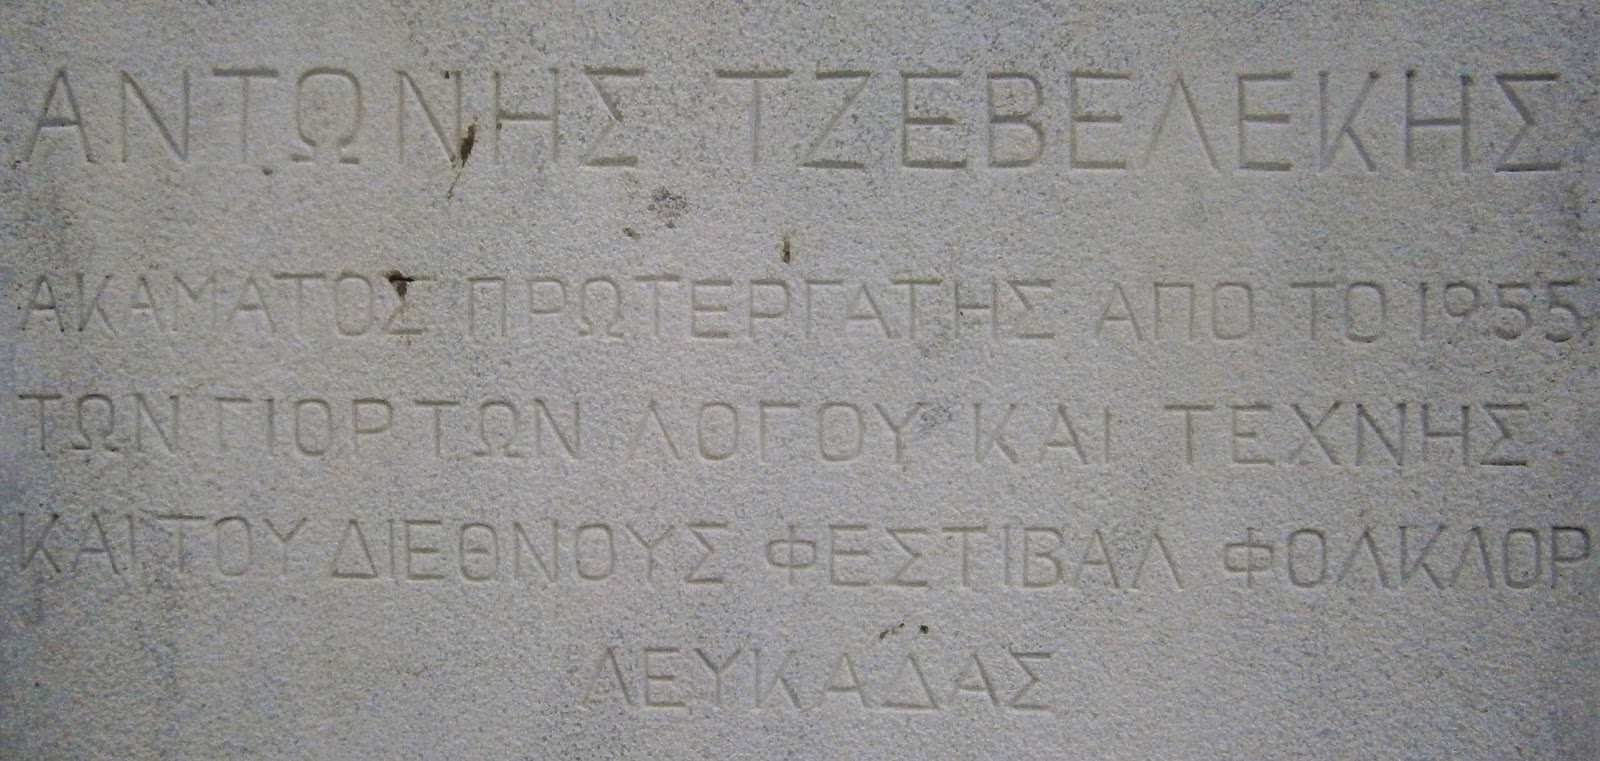 το μνημείο του Τζεβελέκη Αντώνη στη Λευκάδα